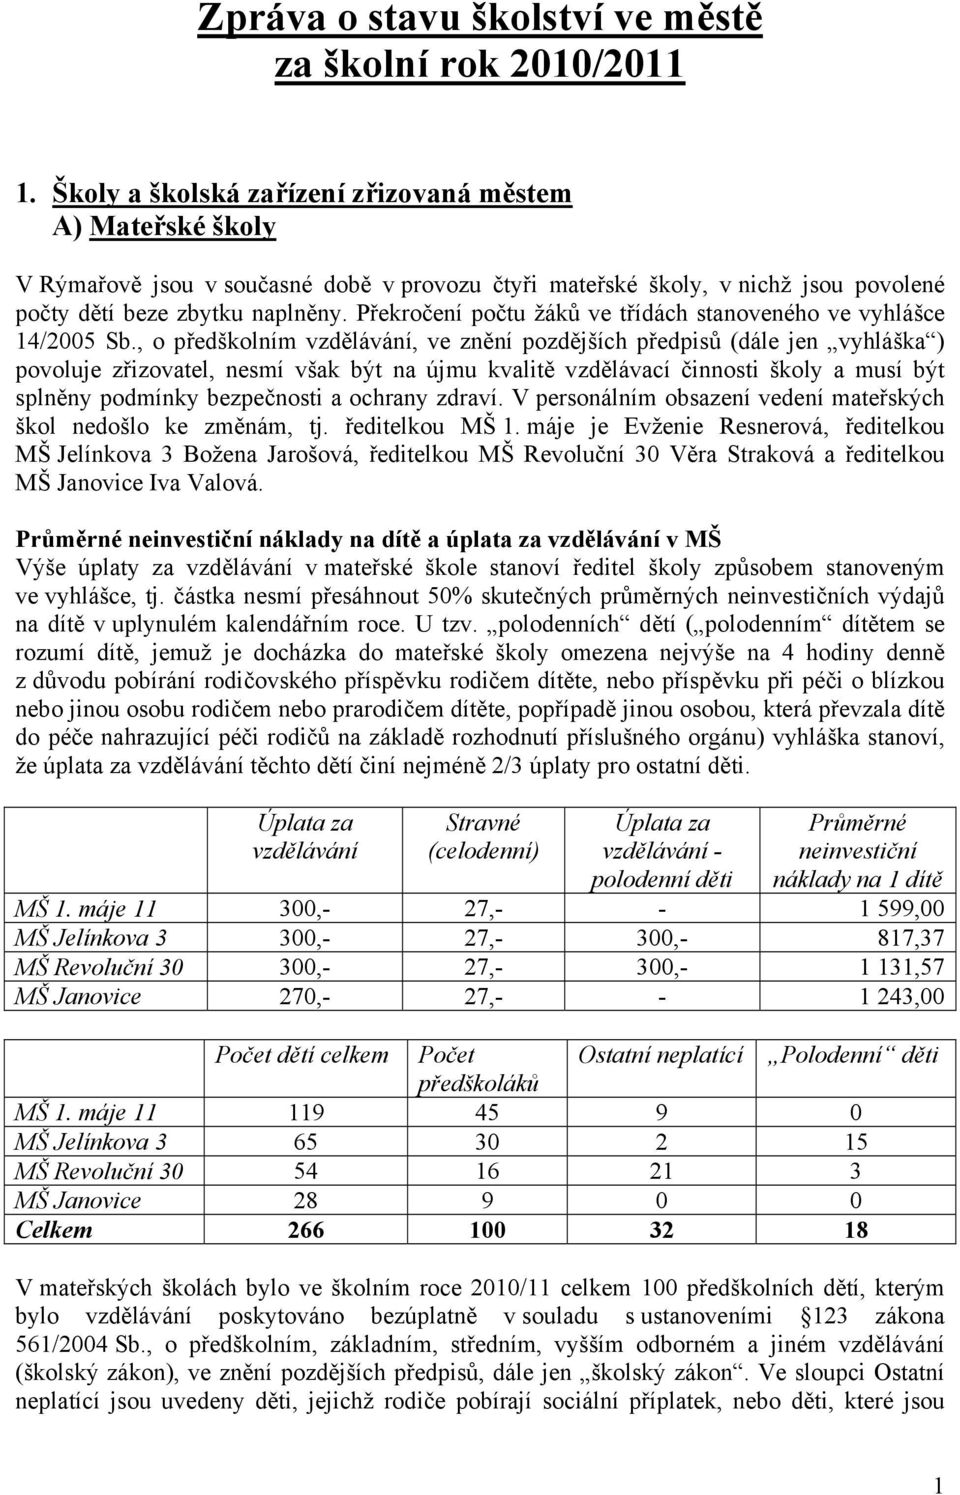 Překročení počtu žáků ve třídách stanoveného ve vyhlášce 14/2005 Sb.